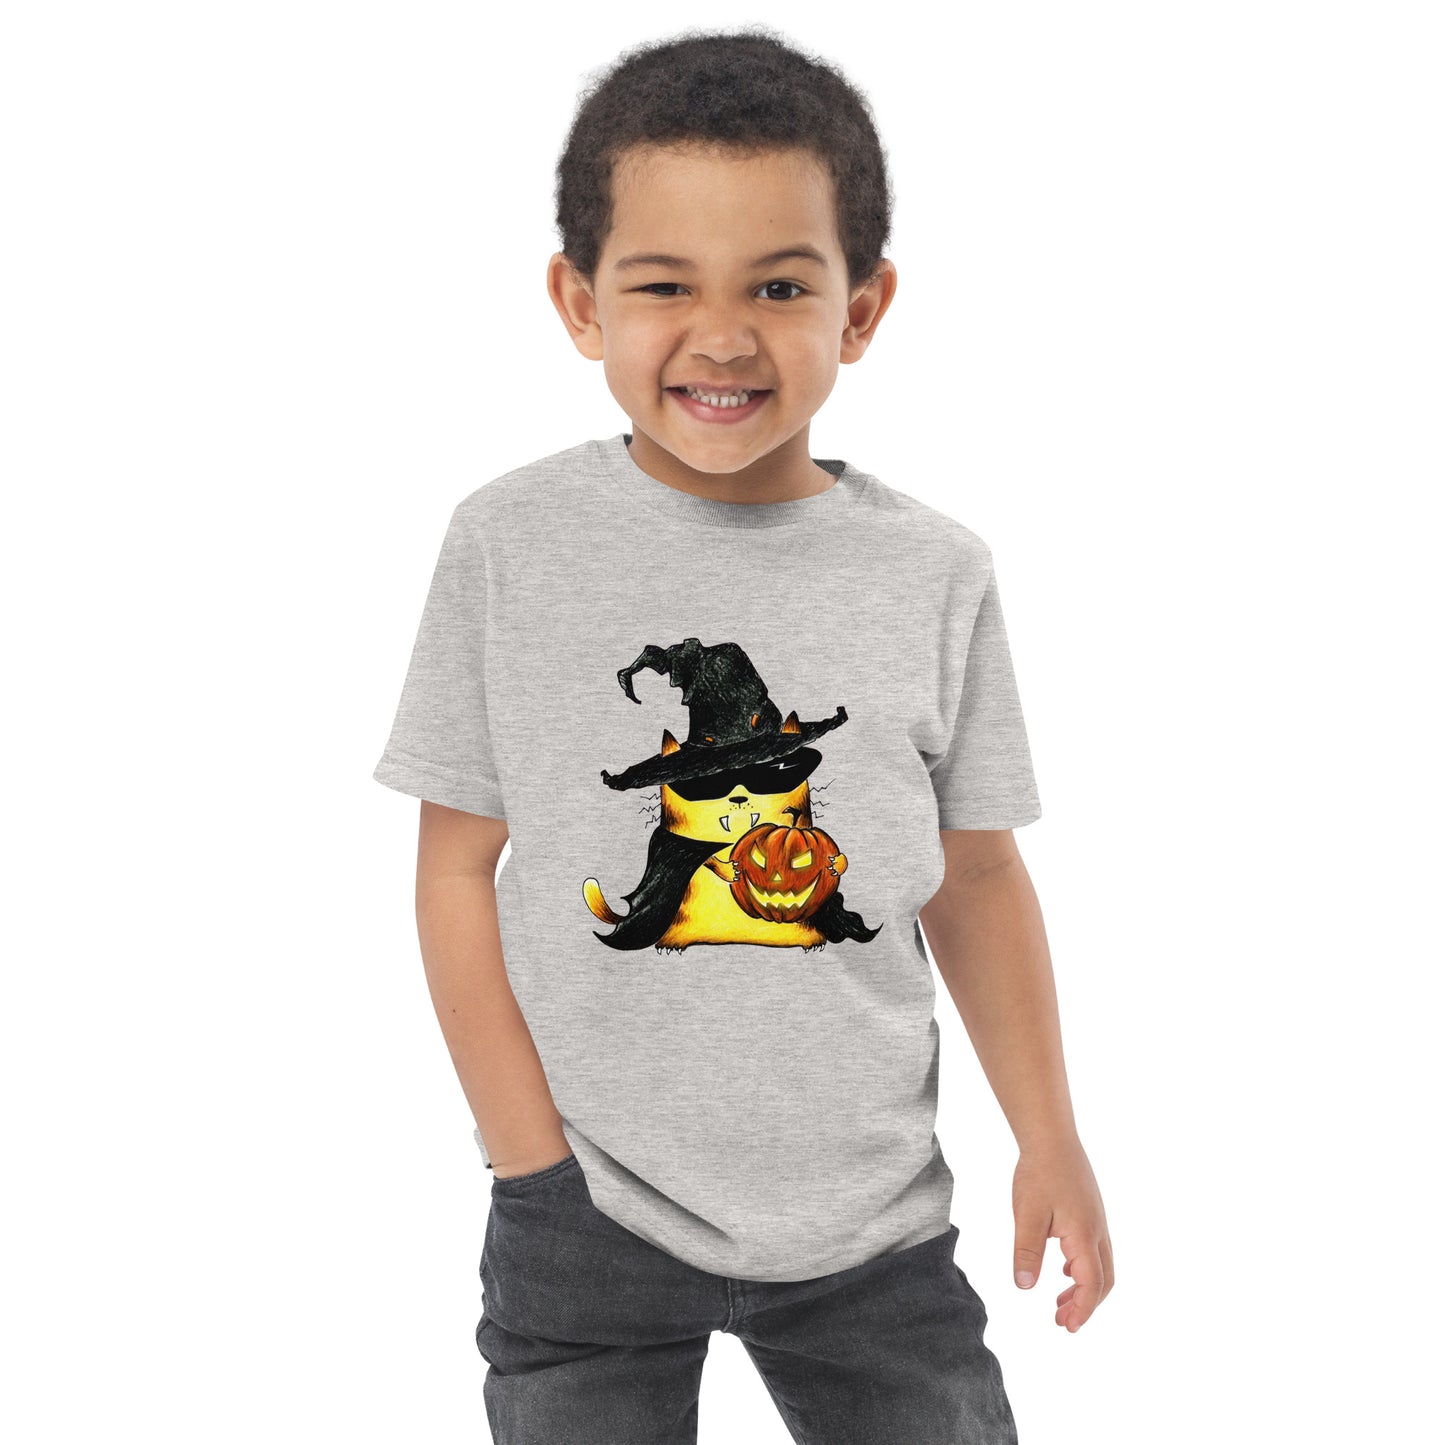 Toddler T-Shirt "Cat and Pumpkin"